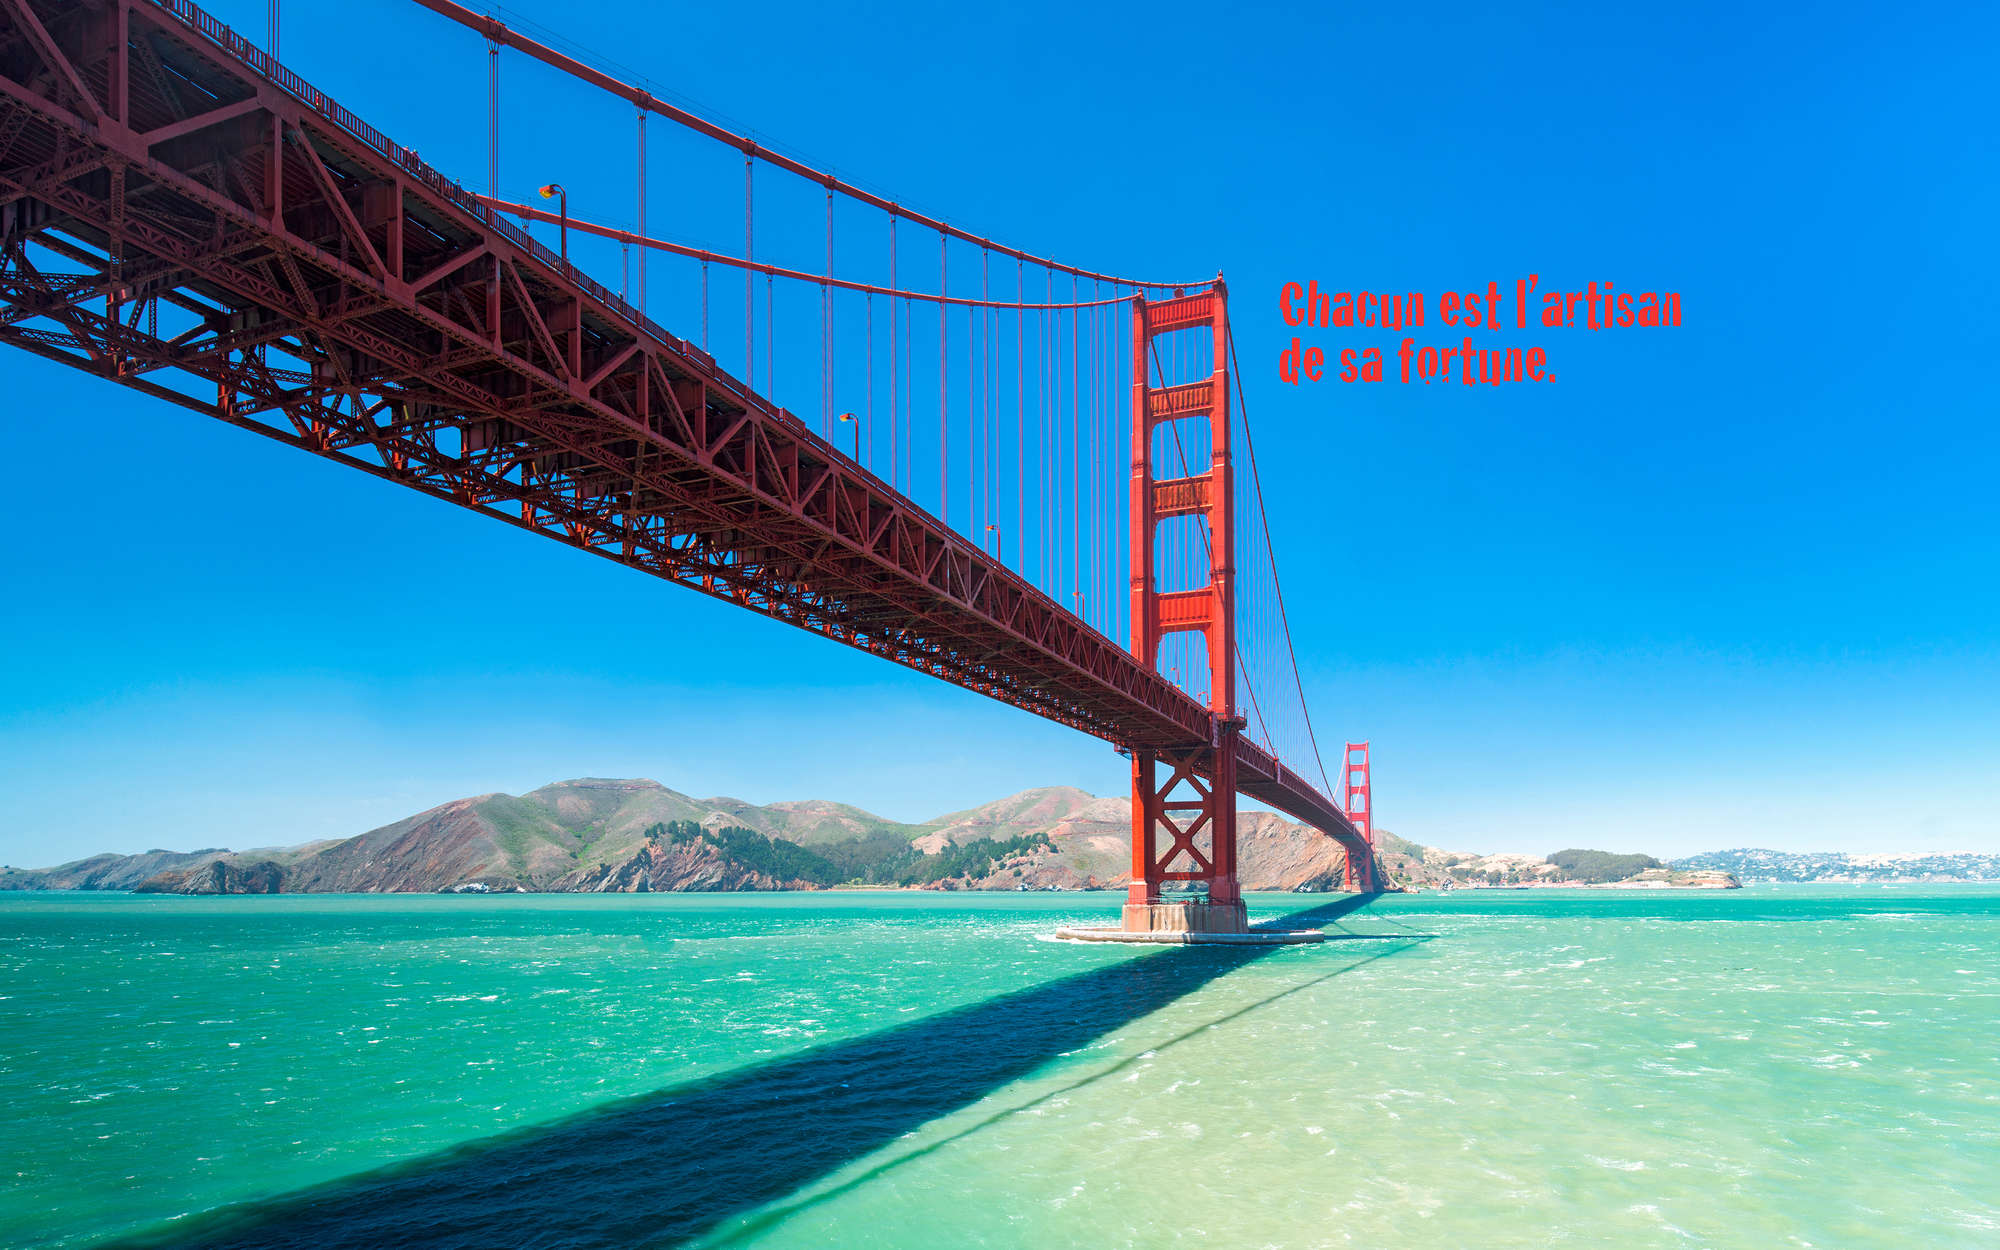             Fotomurali sul Golden Gate Bridge con scritte in francese - Materiali non tessuto liscio di qualità superiore
        